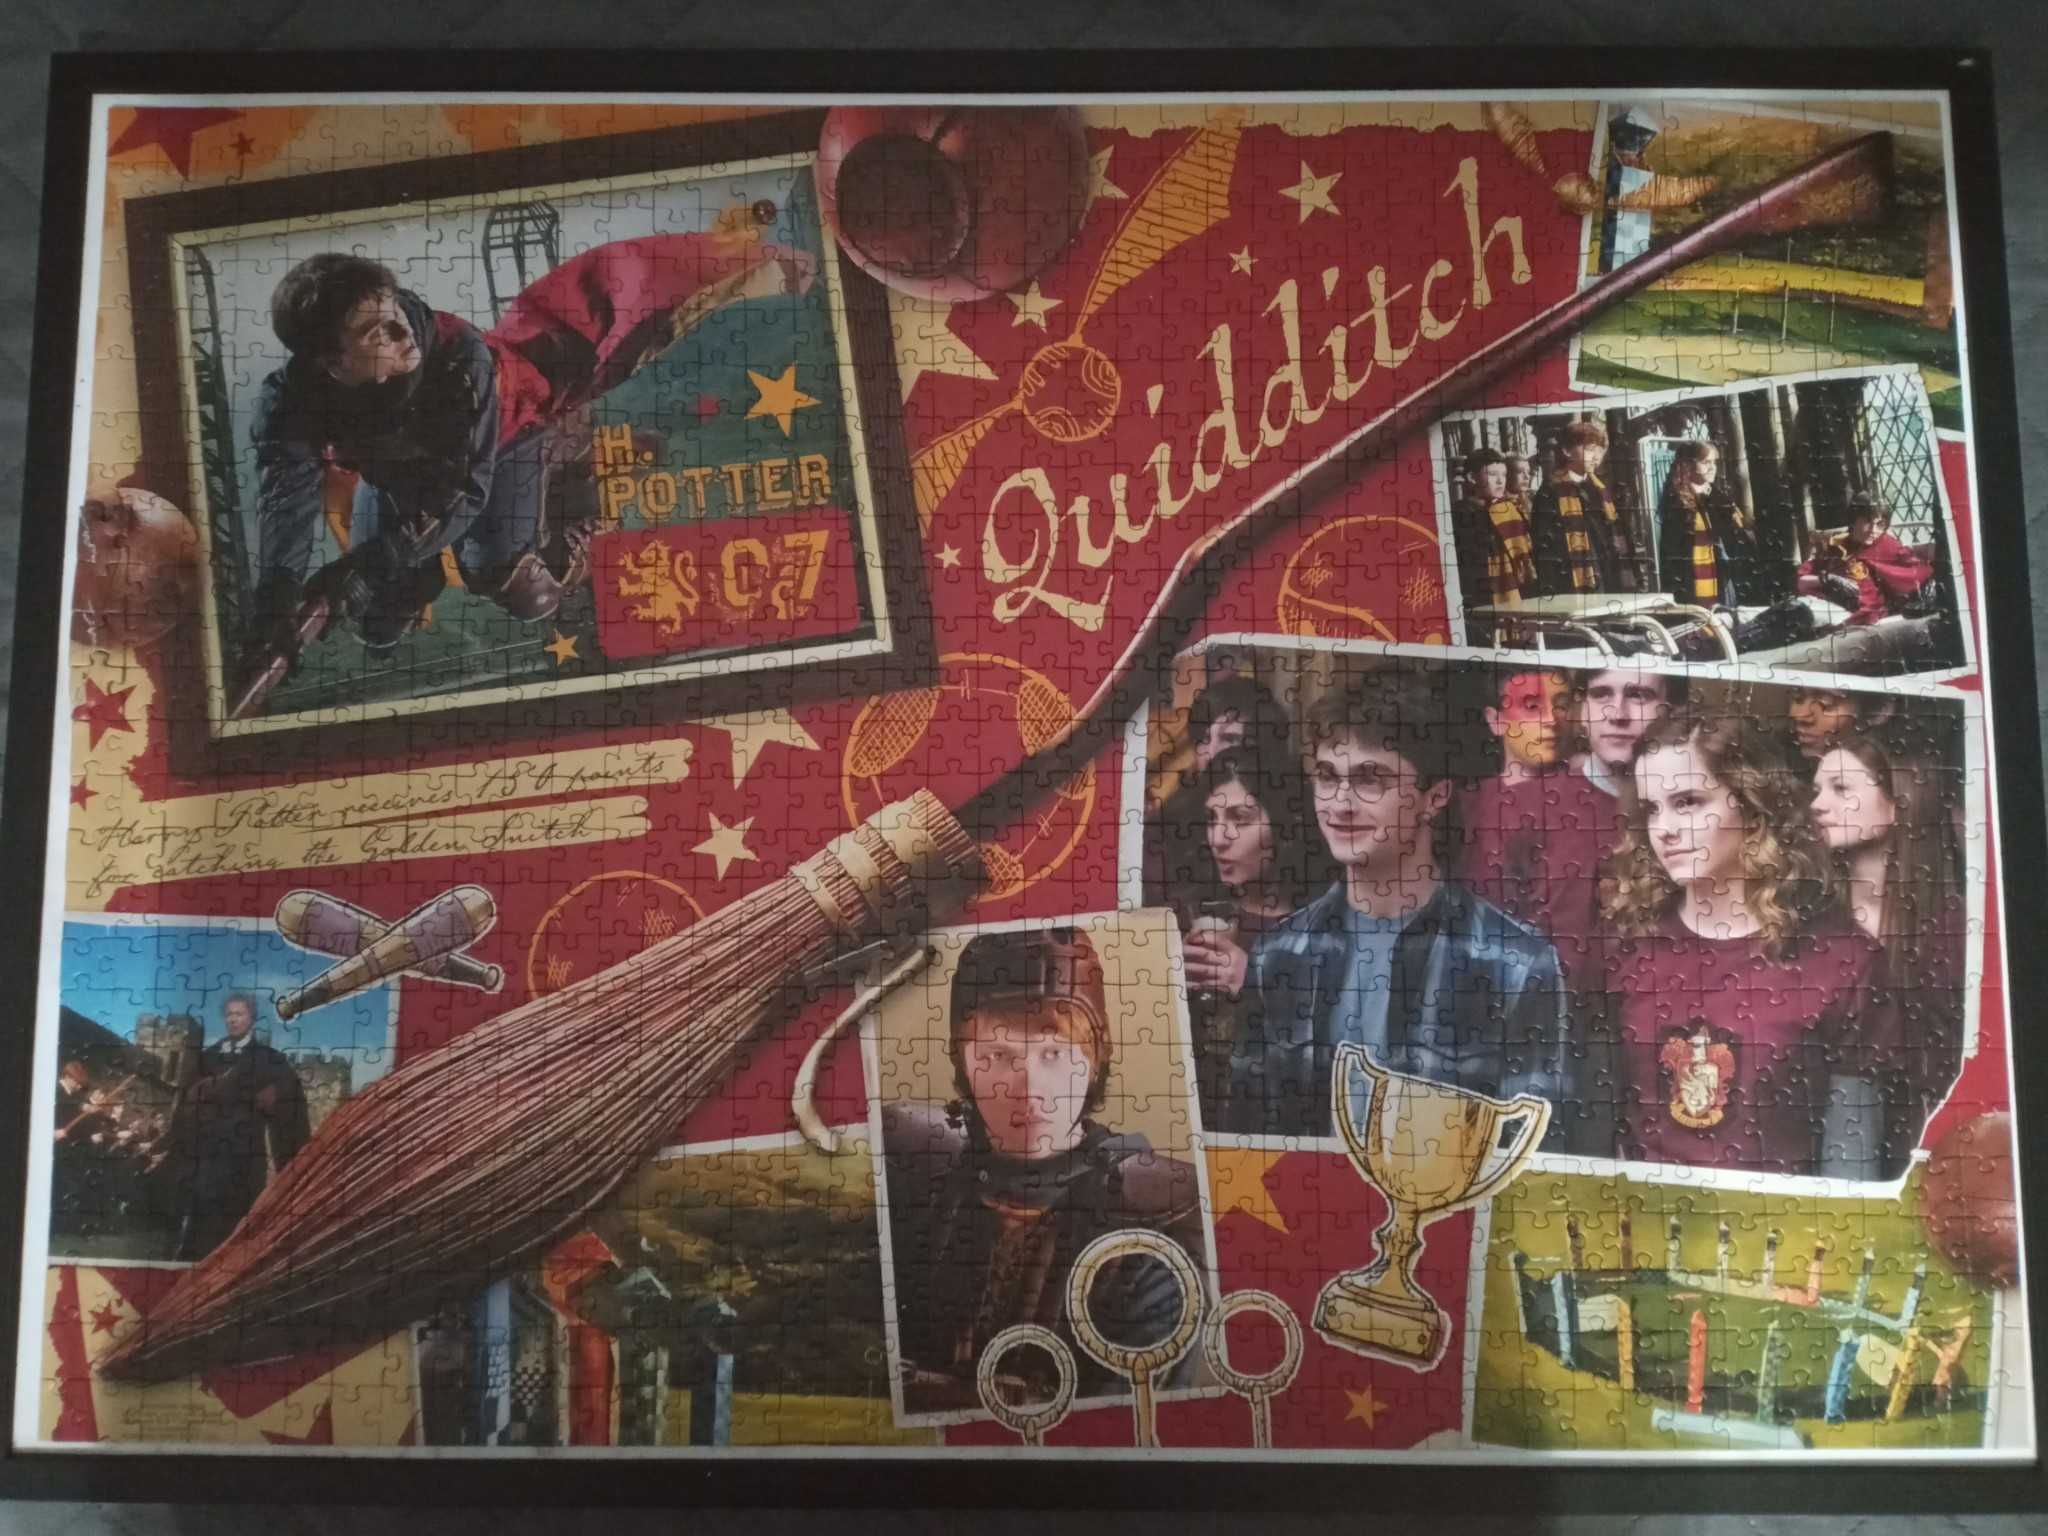 2x Puzzle Trefl 1000 elementów Harry Potter+ Plakat- używane